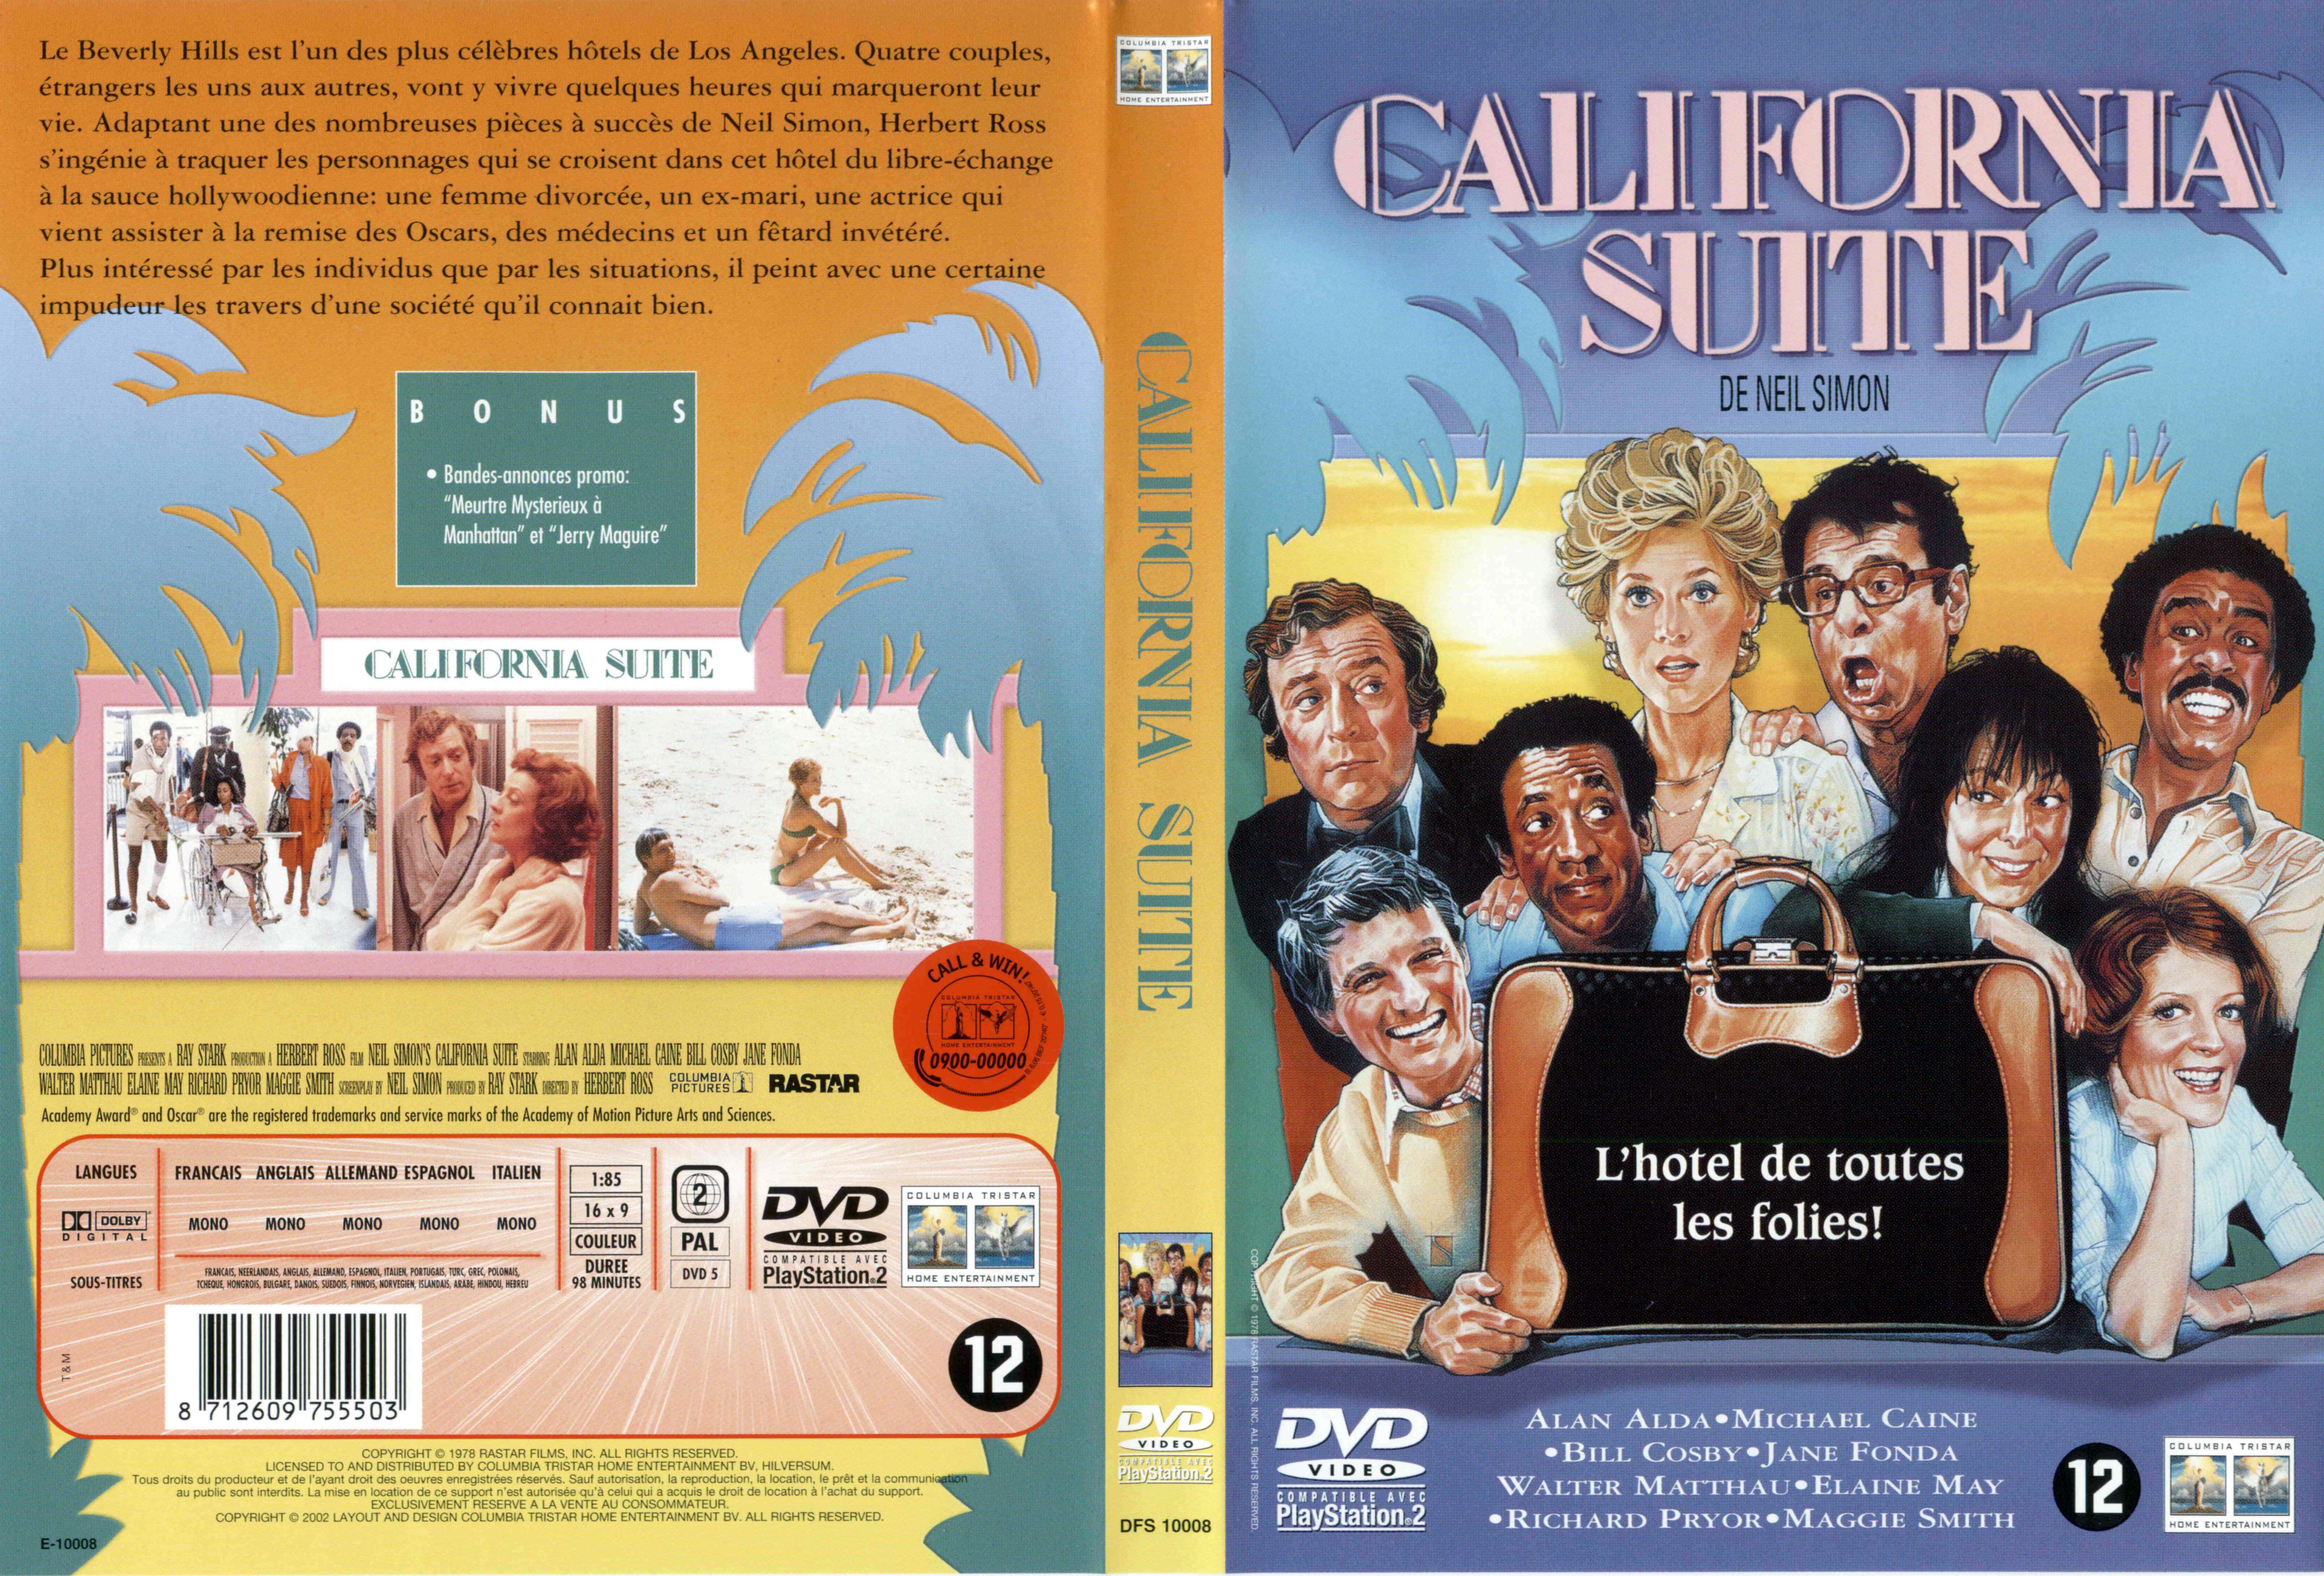 Jaquette DVD California suite